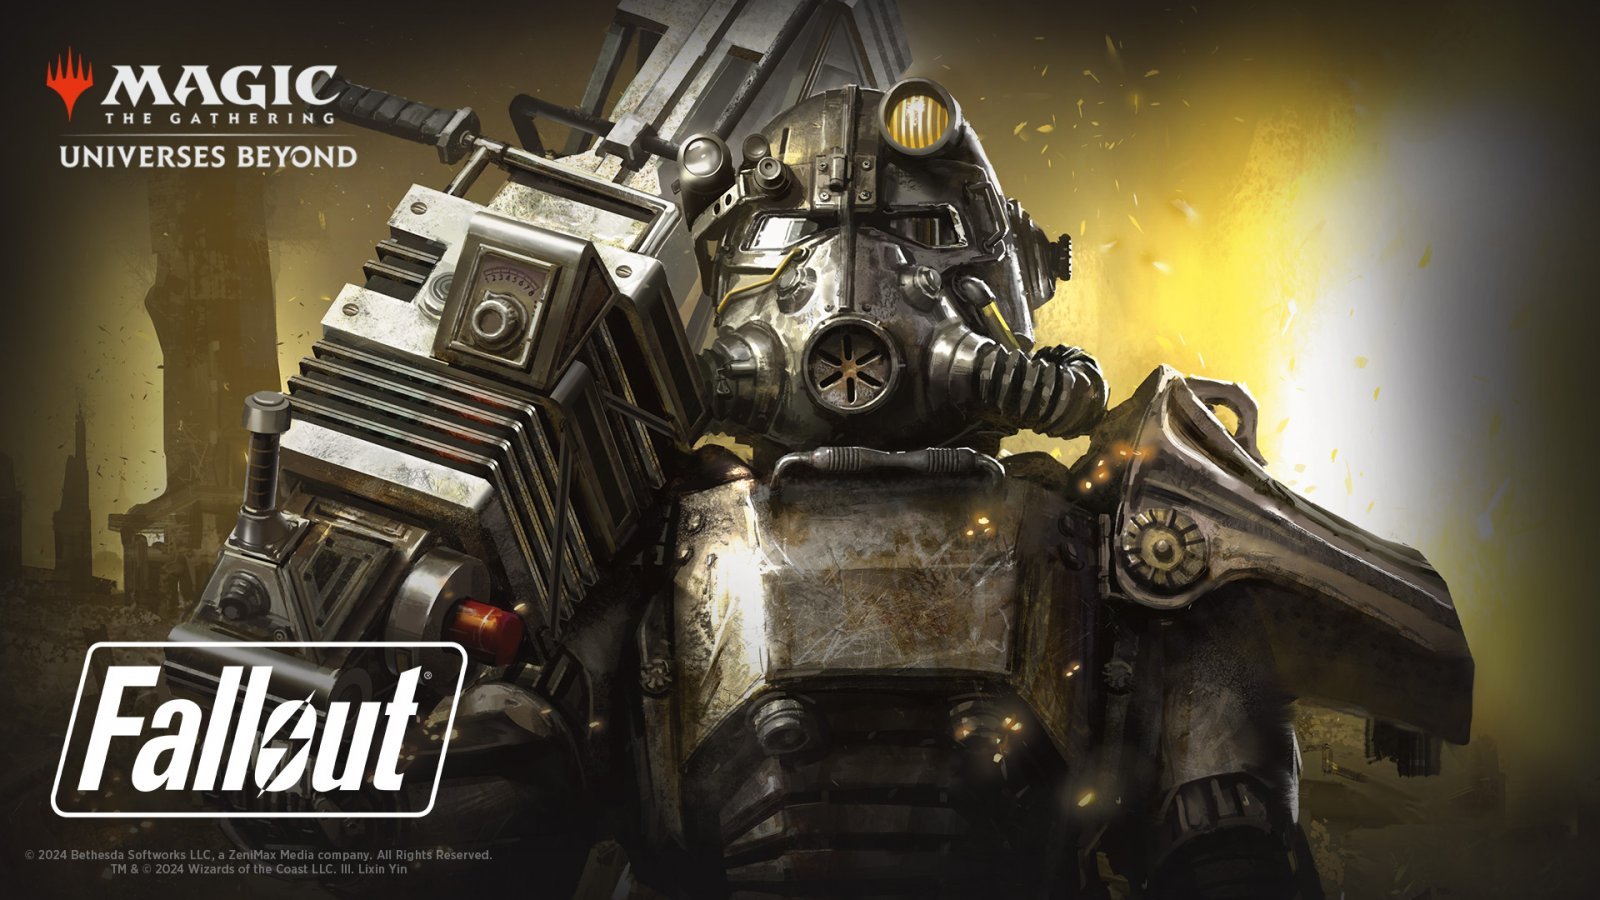 Magic: The Gathering e Fallout, 4 mazzi Commander in arrivo: data di uscita e dettagli